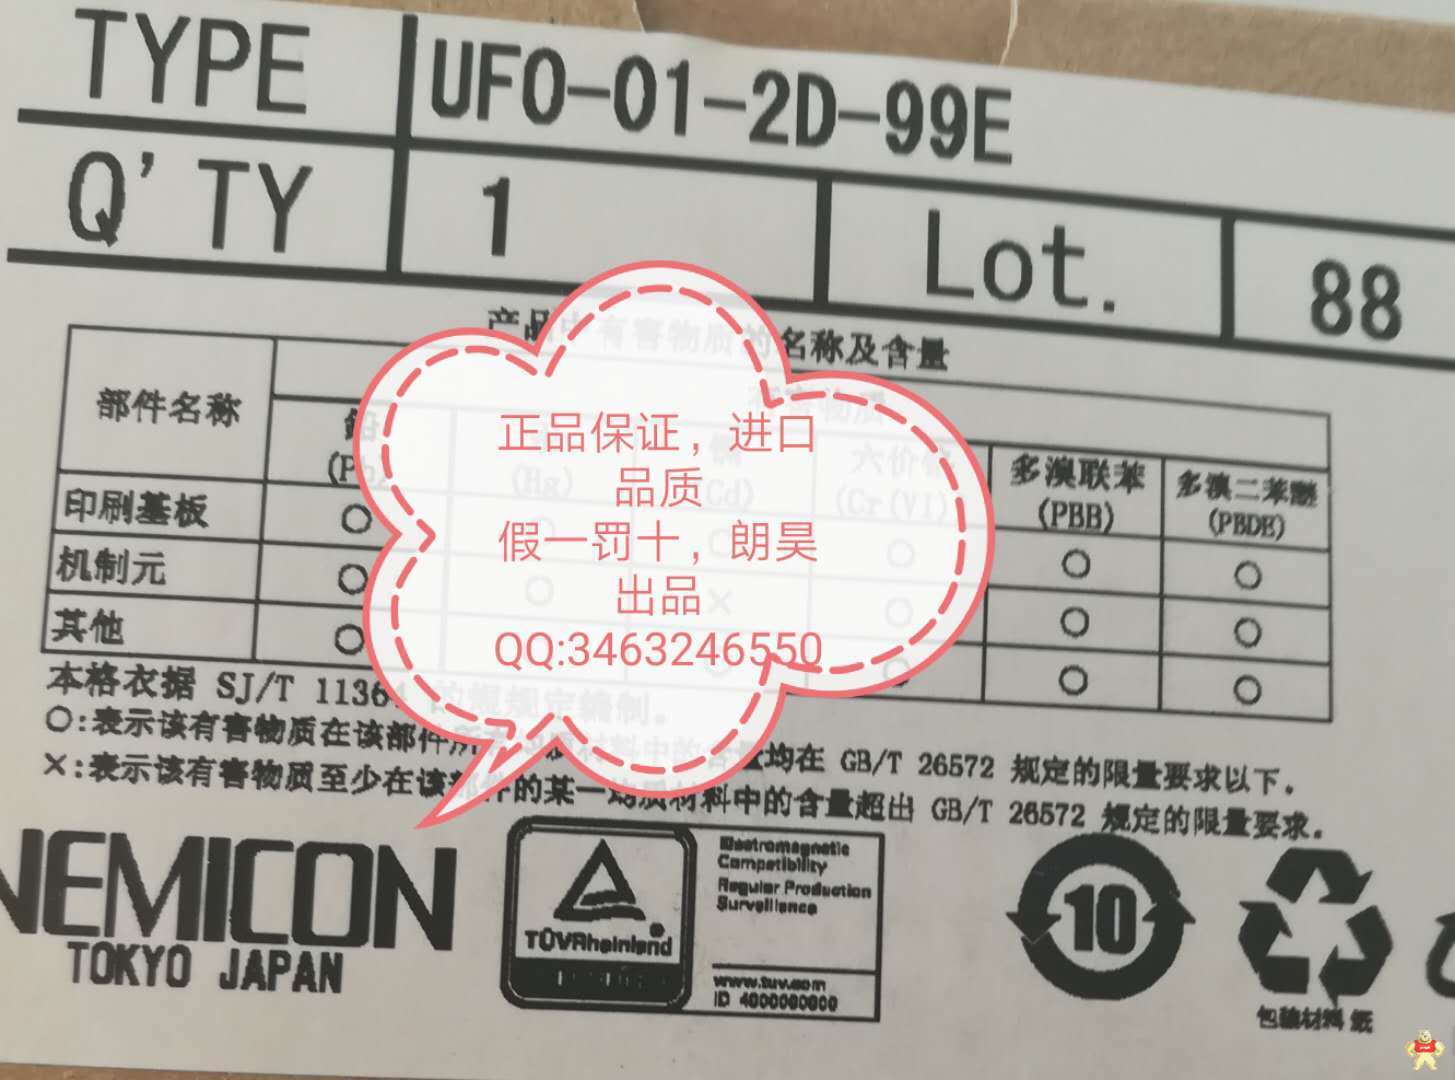 UFO-01-2D-99E UFO-01-2D-99,内密控电子手轮,NEMICON,电子手轮UFO-01-2D-99,日本内密控